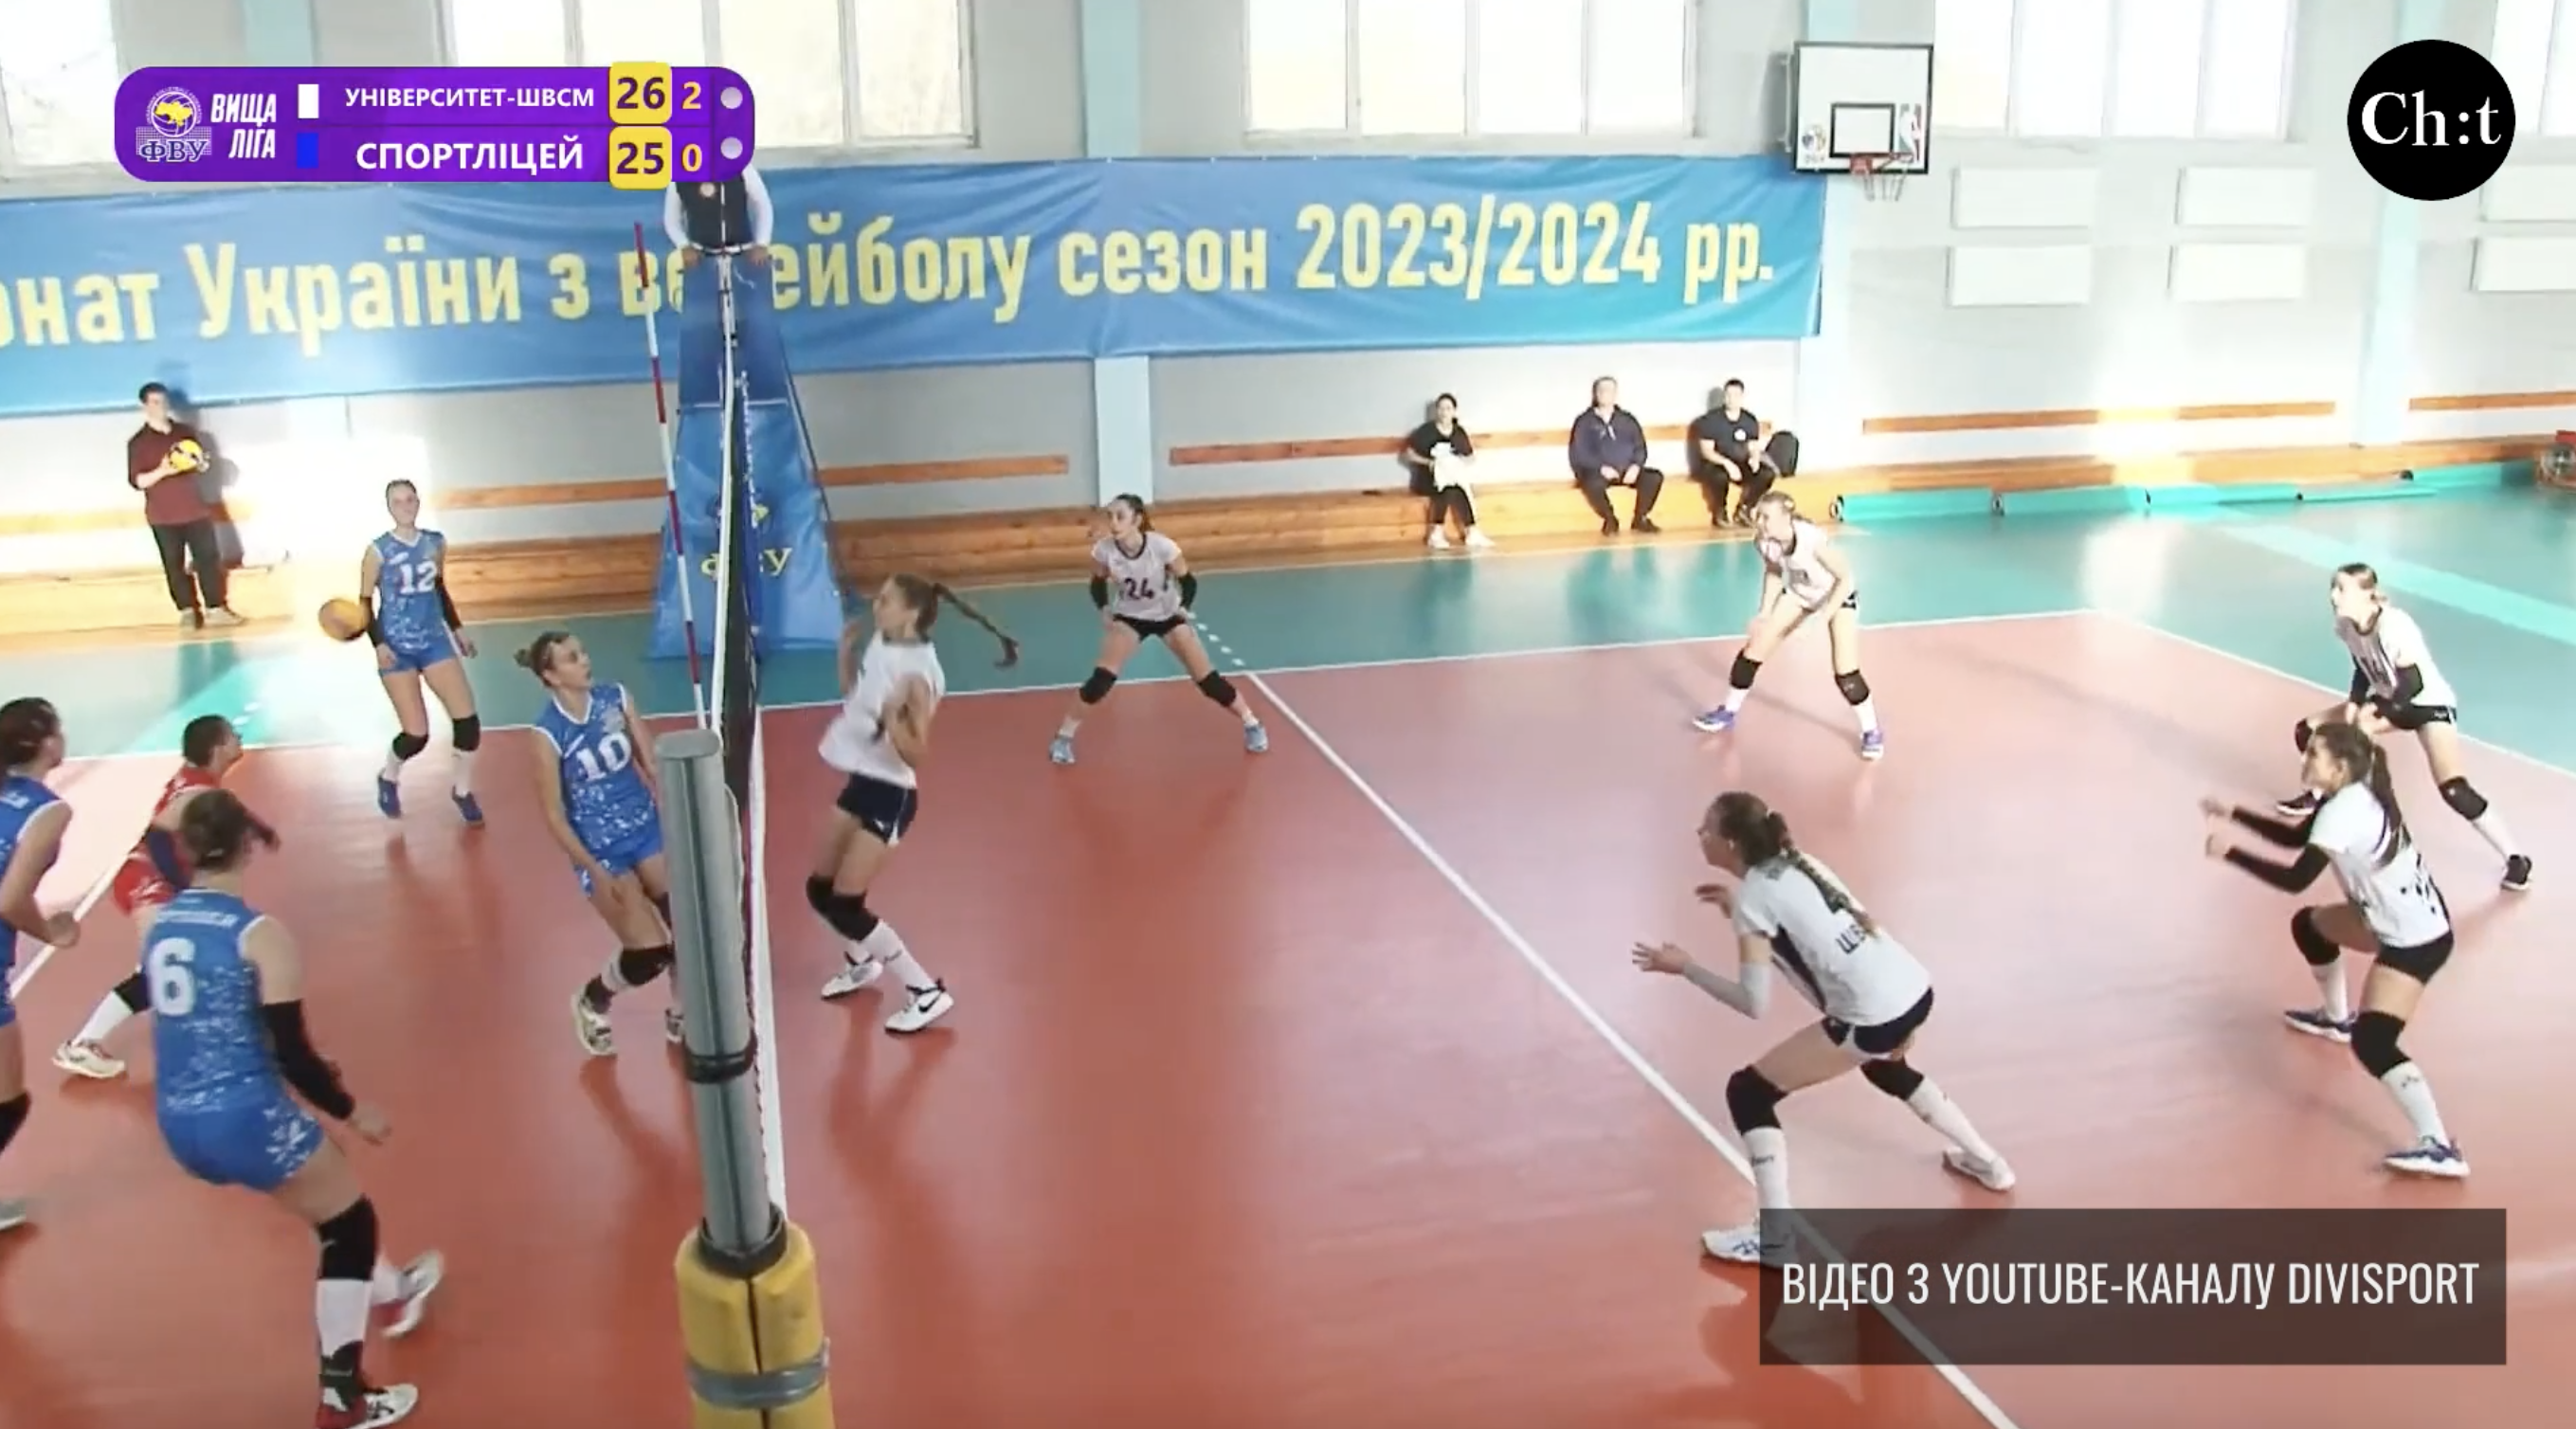 Чемпіонат України з волейболу 2023-2023 рр.